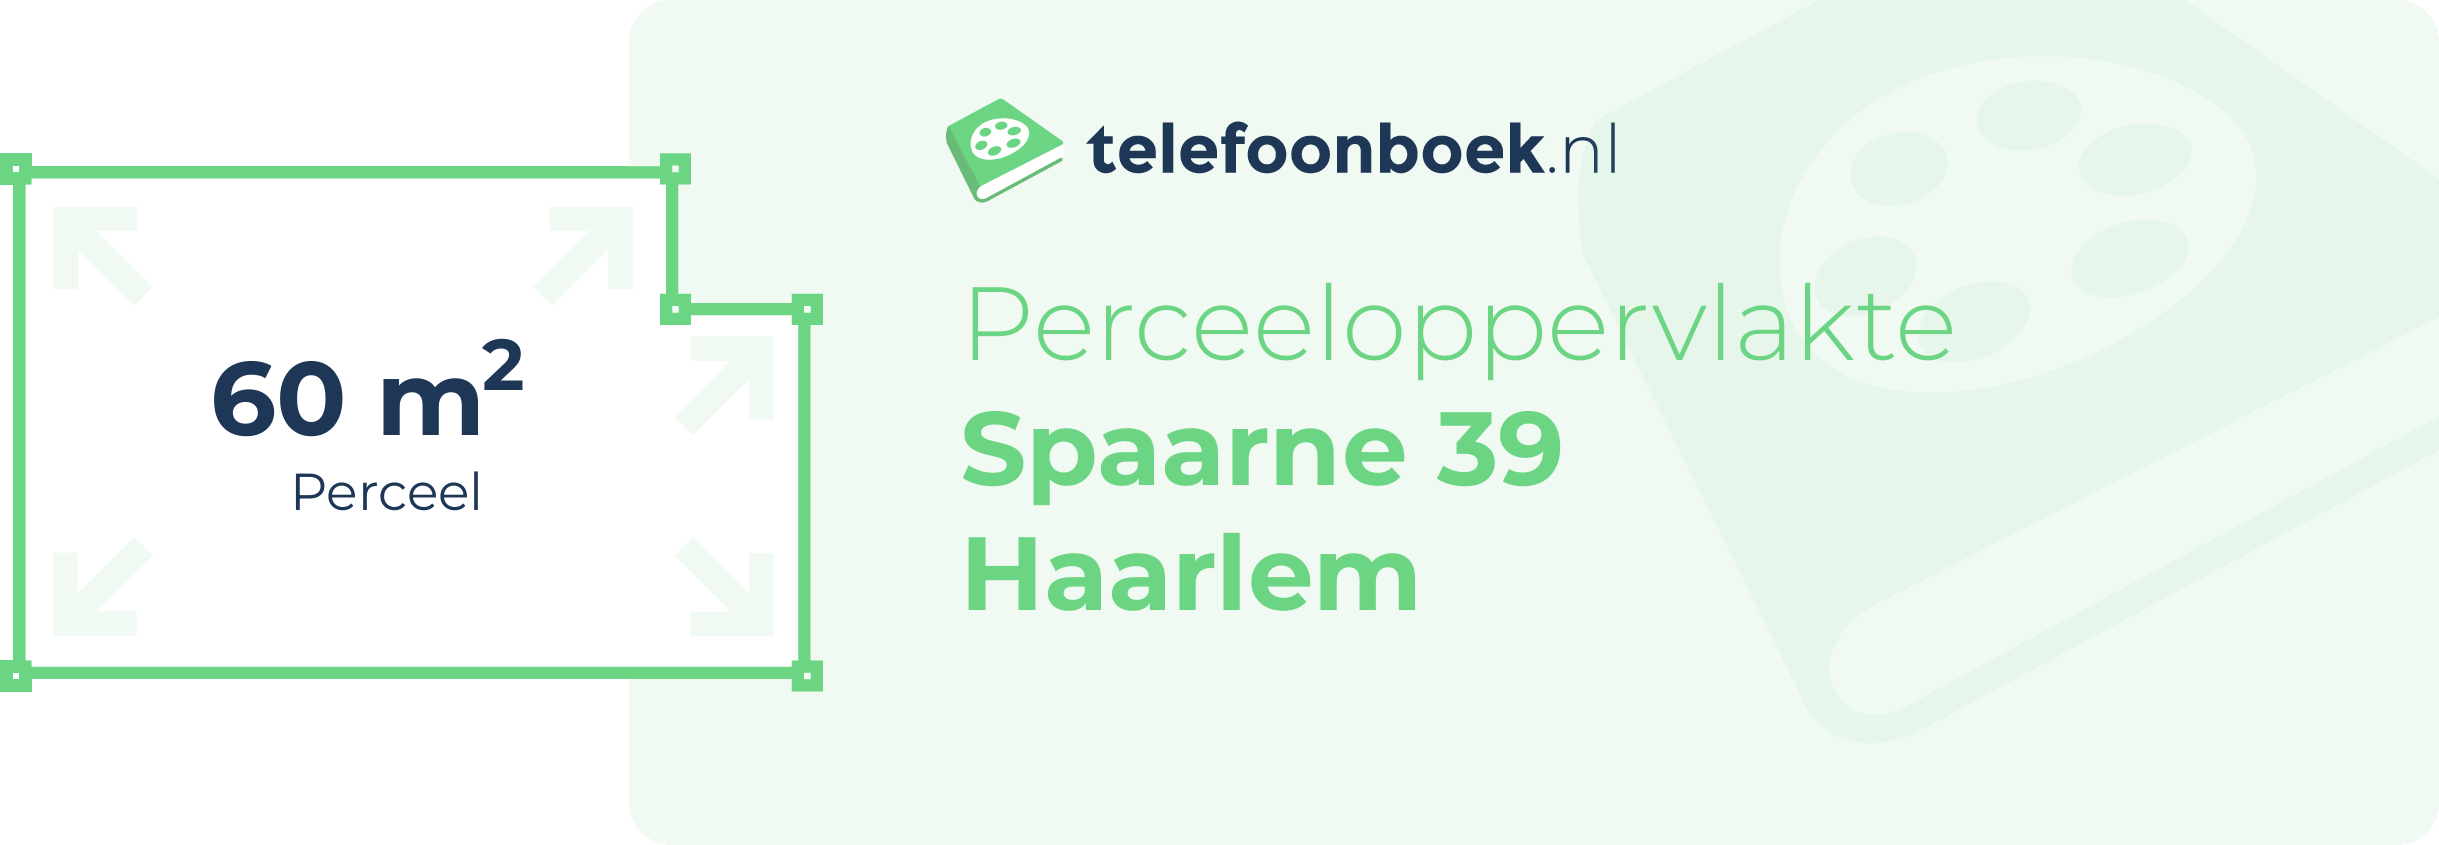 Perceeloppervlakte Spaarne 39 Haarlem